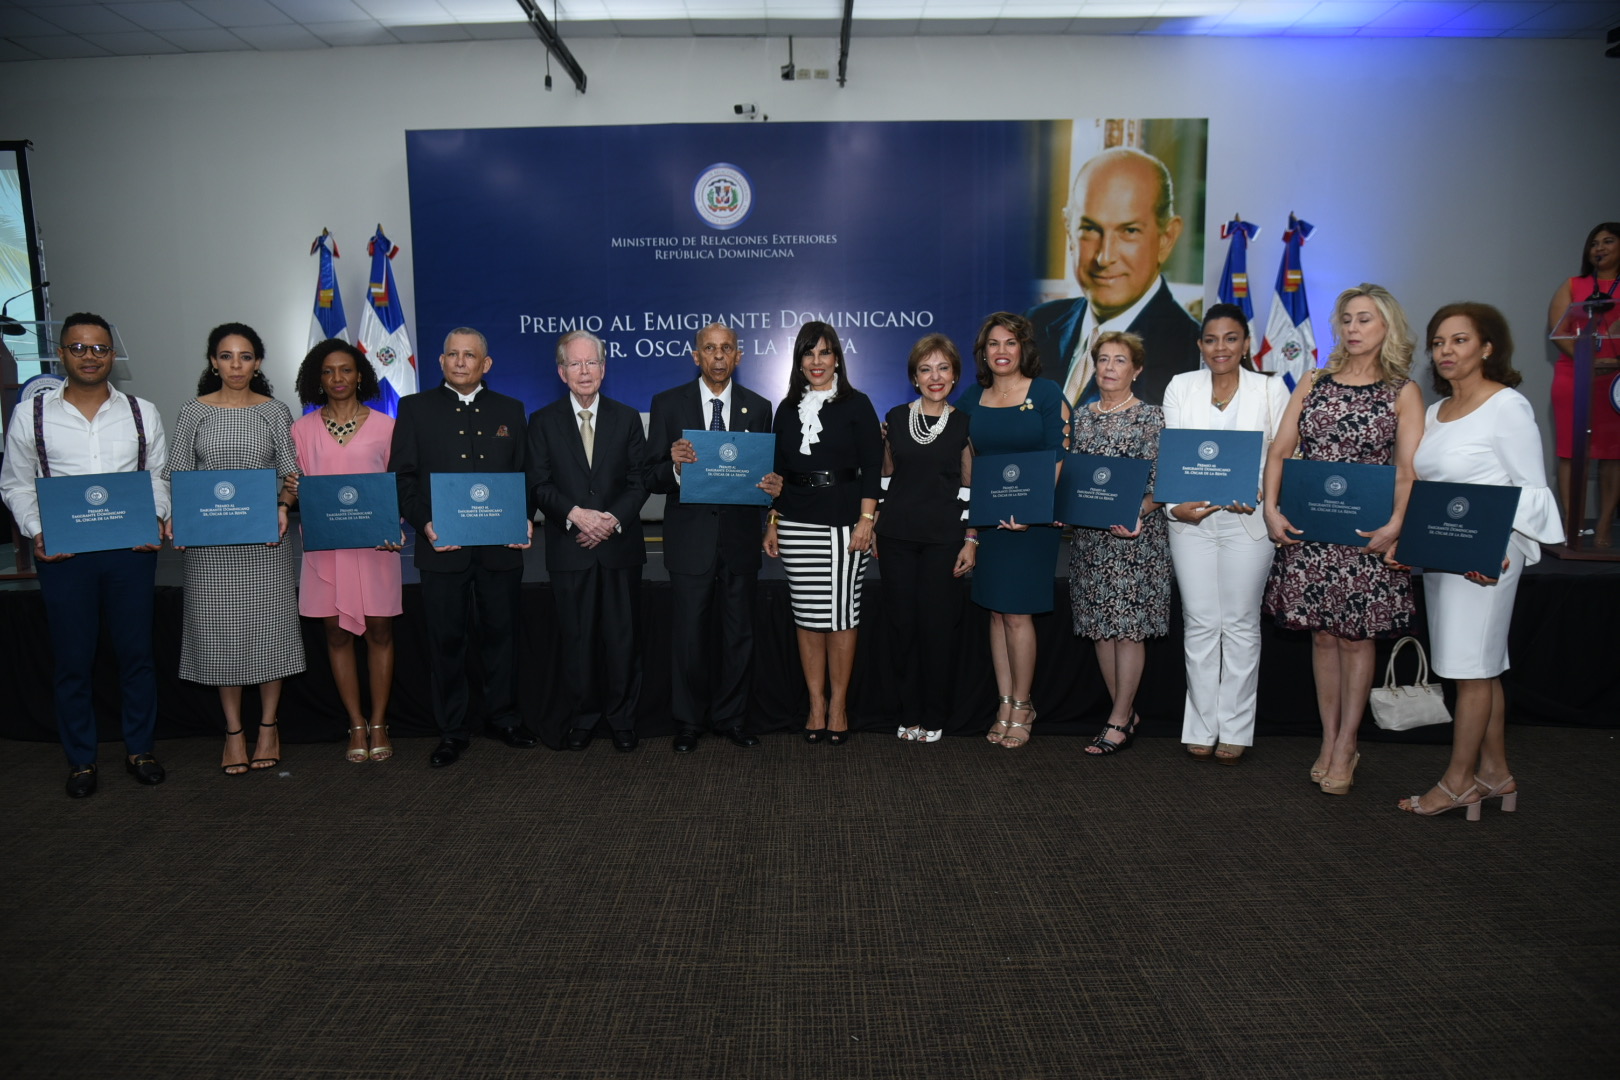 Mirex ofrece coctel en honor a participantes en Premio al Emigrante Dominicano Sr. Oscar de la Renta